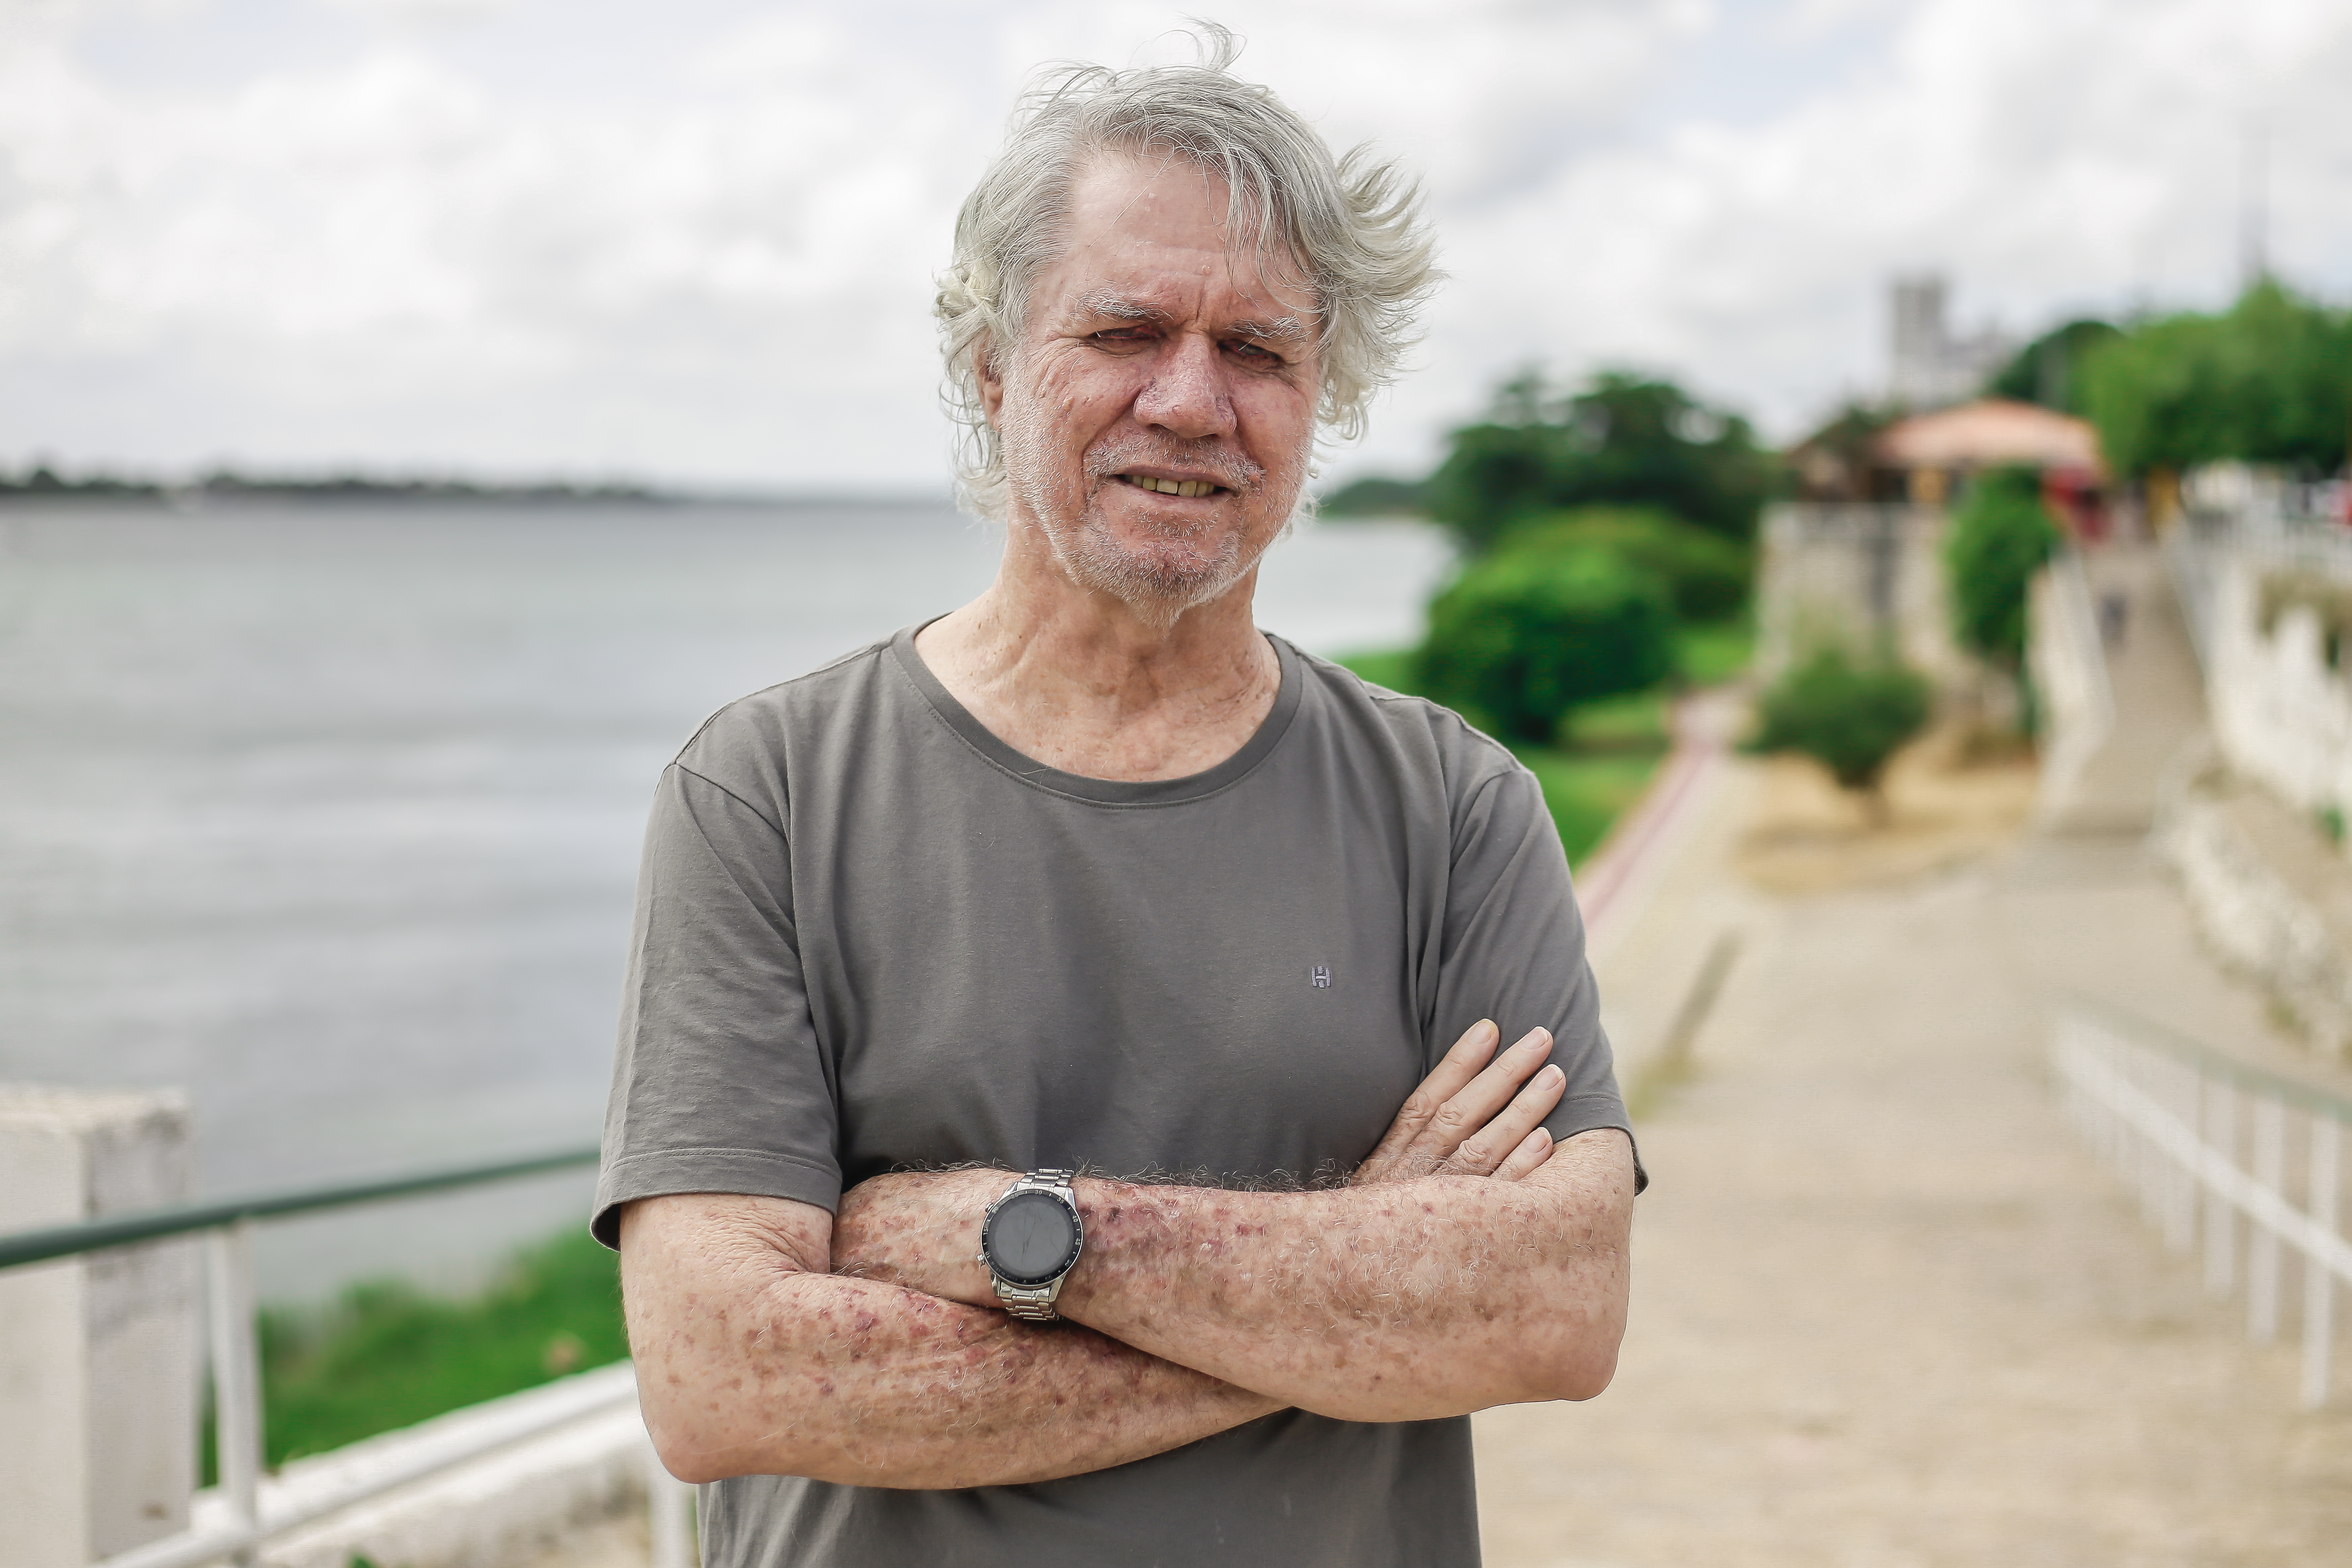 Foto de Roberto Malvezzi, um homem branco, idoso, de fartos cabelos brancos, usando camiseta cinza, de braços cruzados. Ele está em pé numa calçada à beira de um rio, com céu nublado ao fundo.